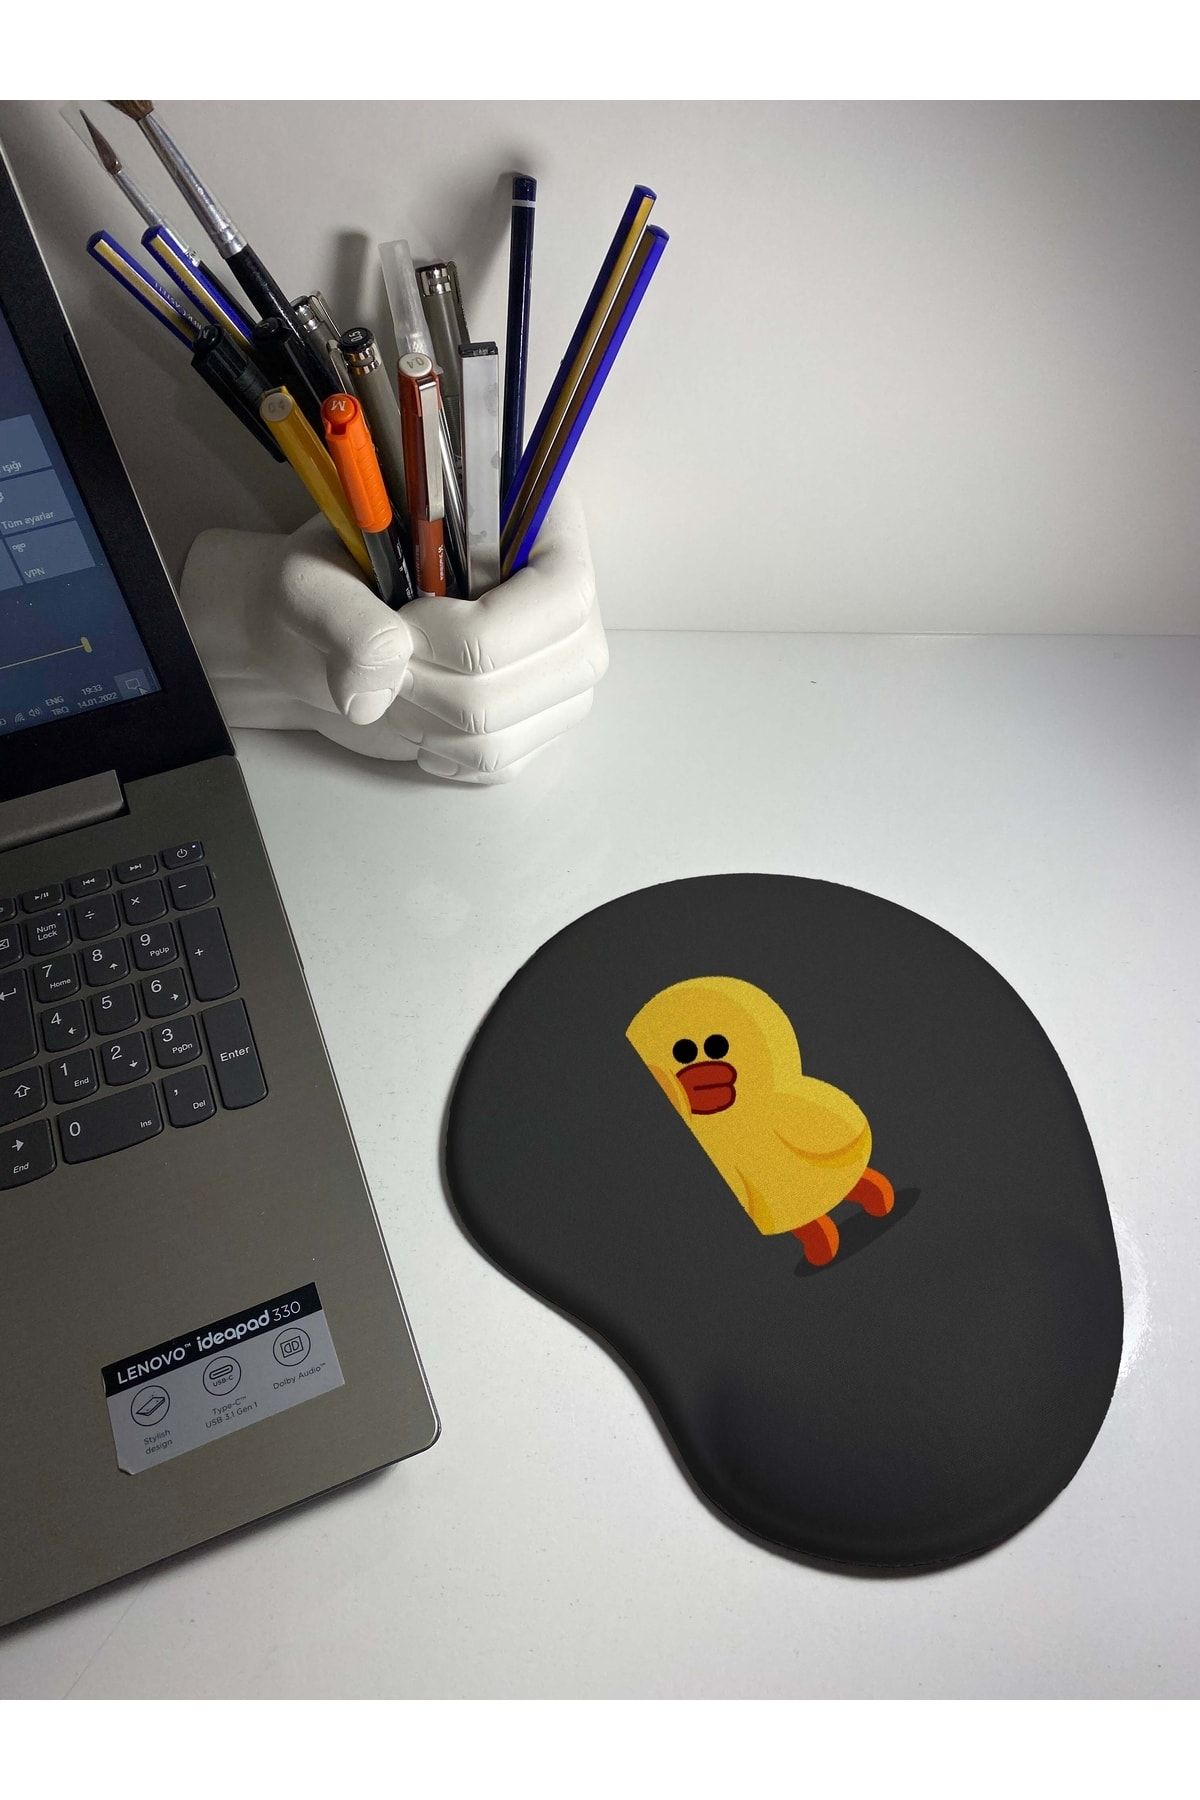 rakkun shop Sevimli Ördek Baskılı Bilek Destekli Mouse Pad